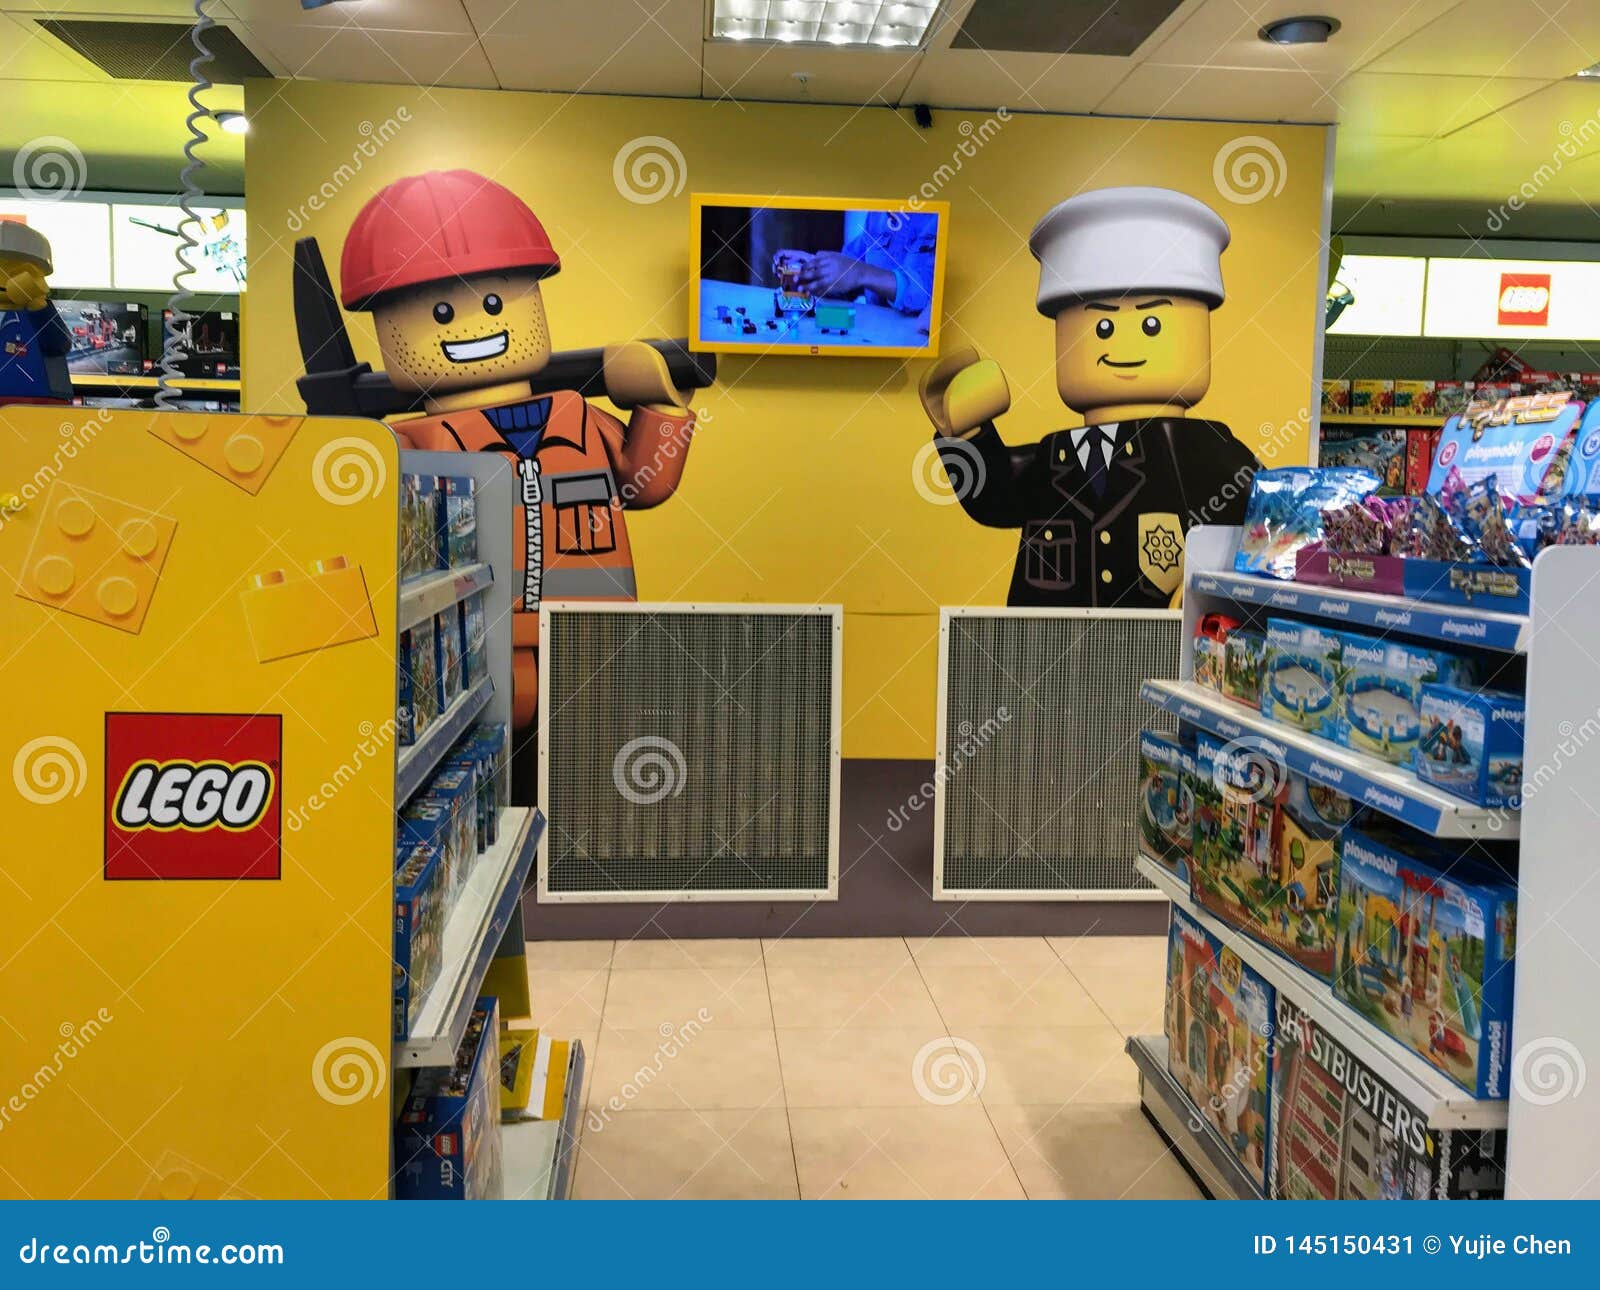 LEGO counter in the shopping mall. 乐高是由乐高集团制造的塑料建筑玩具的线，在比灵斯根据的私有公司，丹麦 公司的重要产品，乐高，包括伴随一一些齿轮的五颜六色的连结的塑料砖，小雕象叫minifigures和各种各样的零件 r